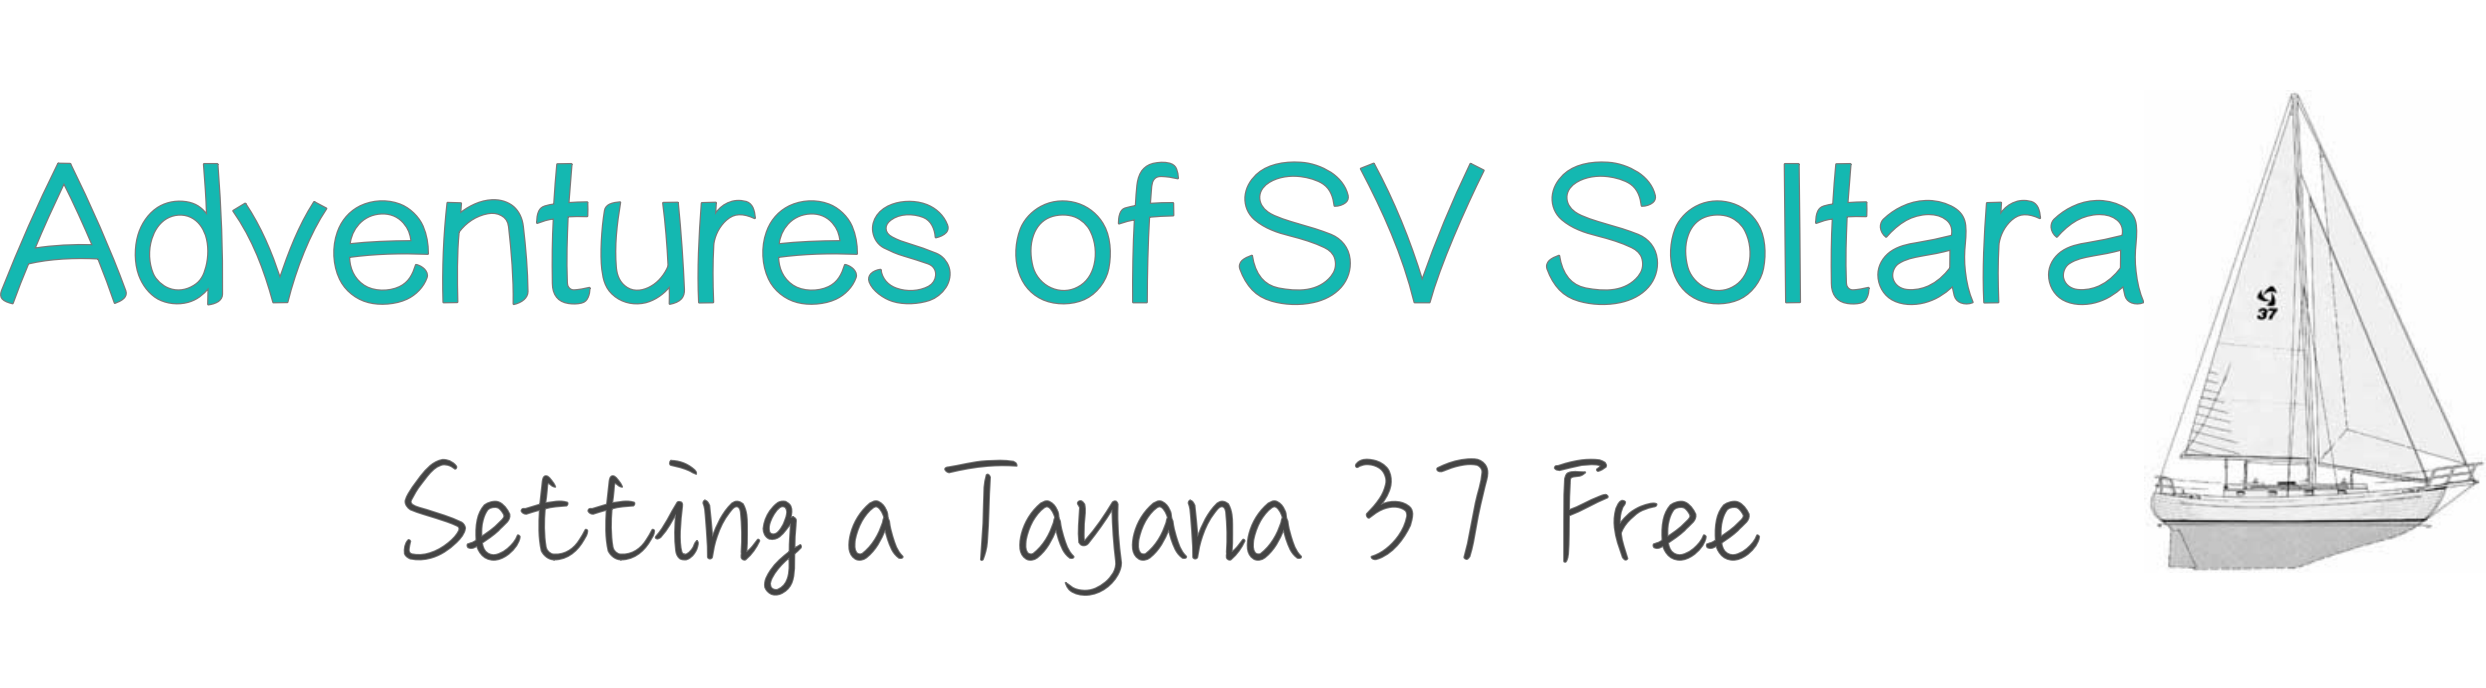 Adventures of SV Soltara